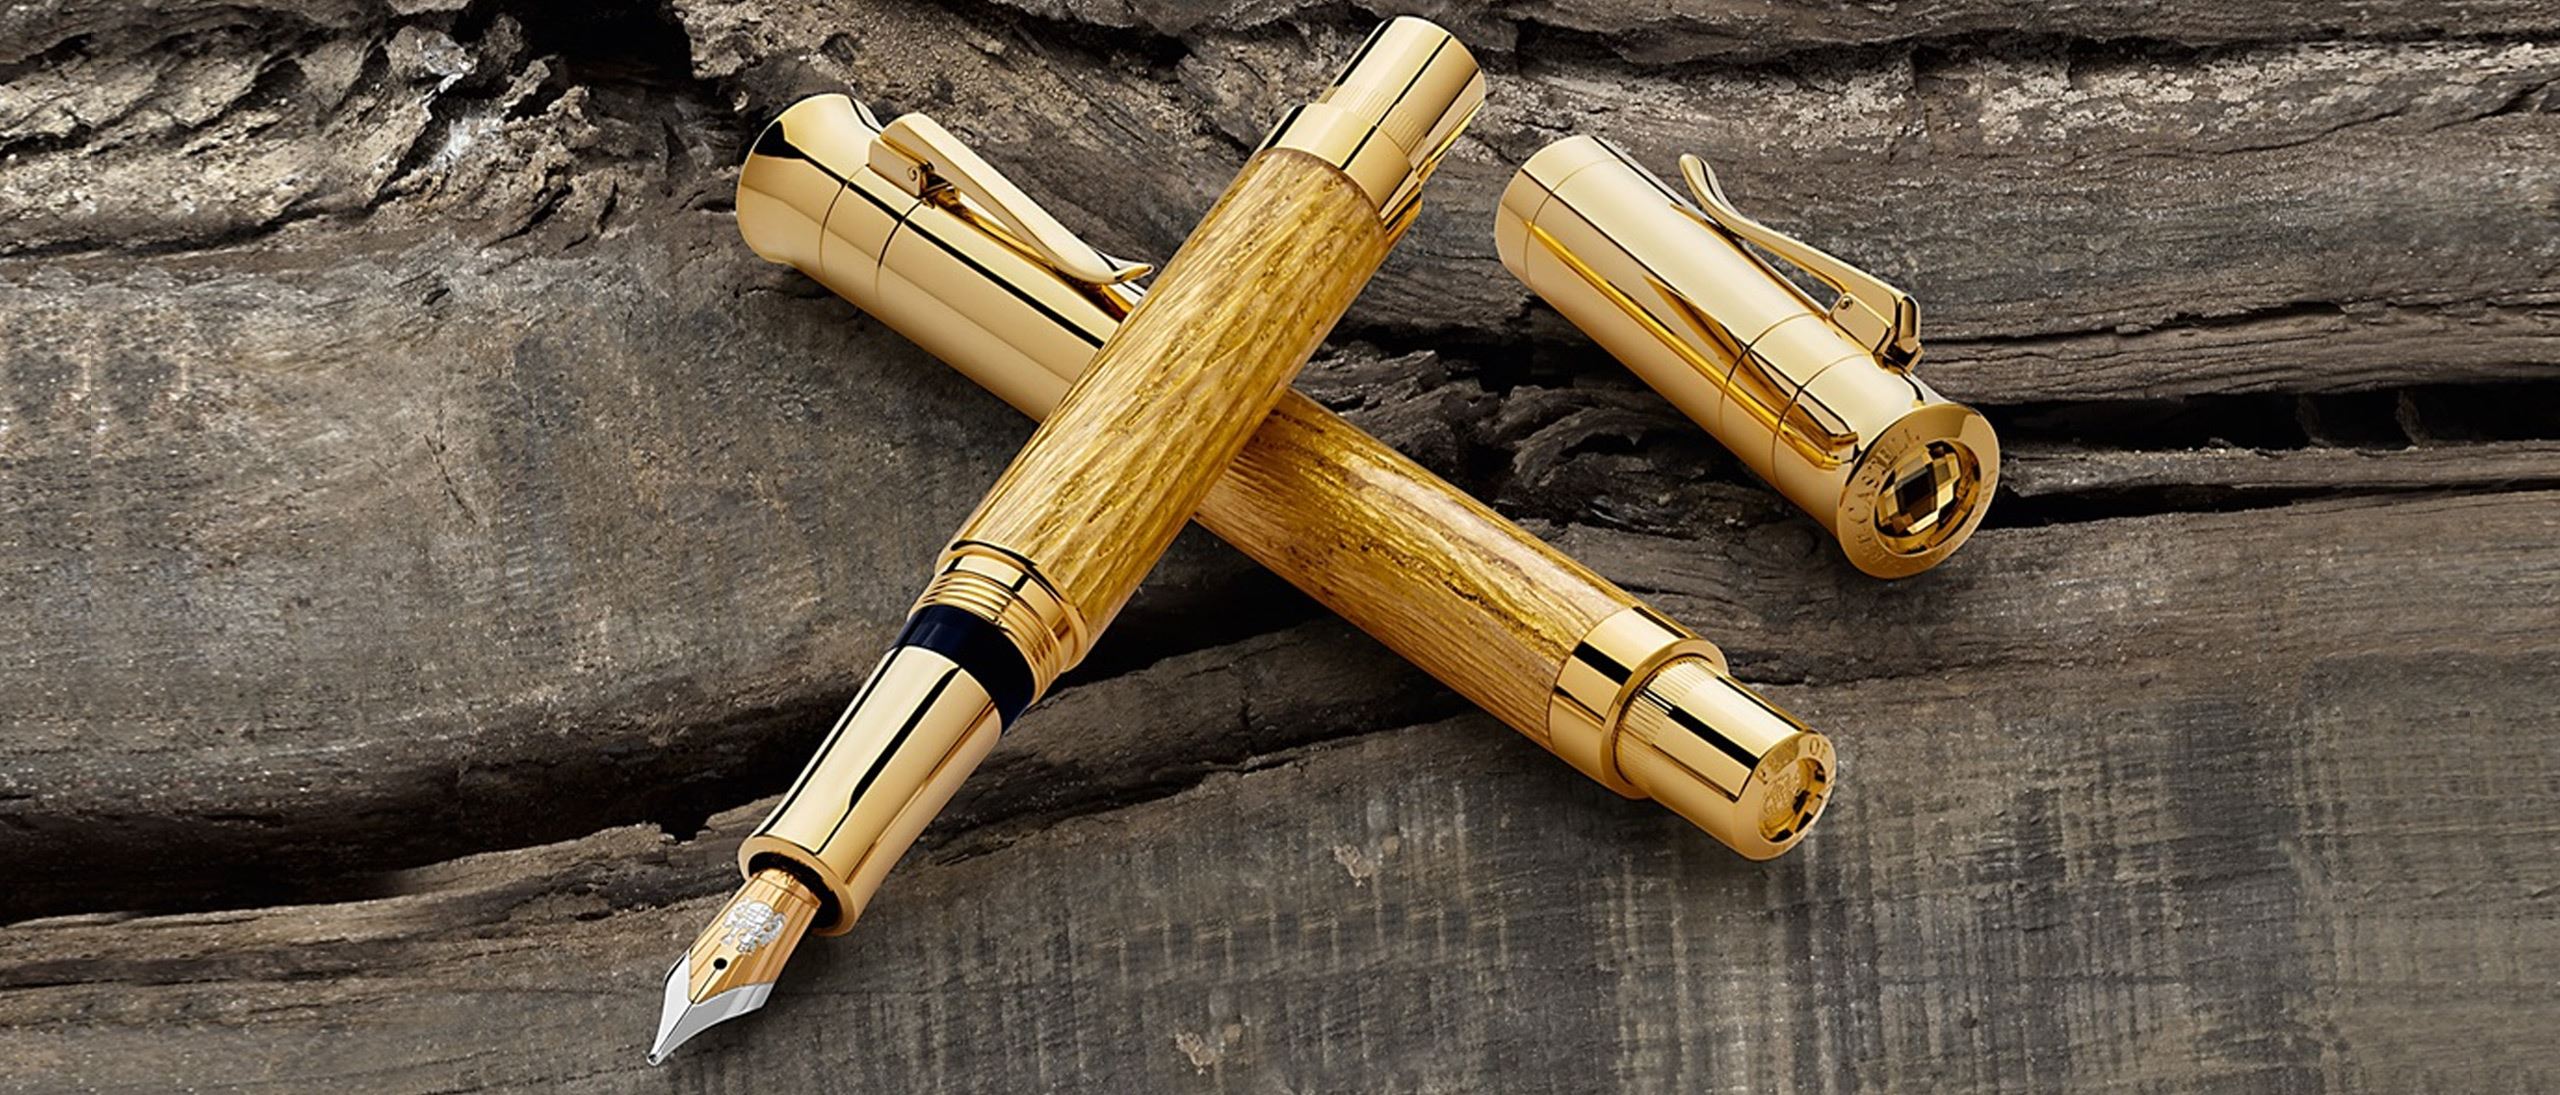 Stylus Pen Black walnut wood  Pen Handcrafted Pens EURO Classic Wooden Pen